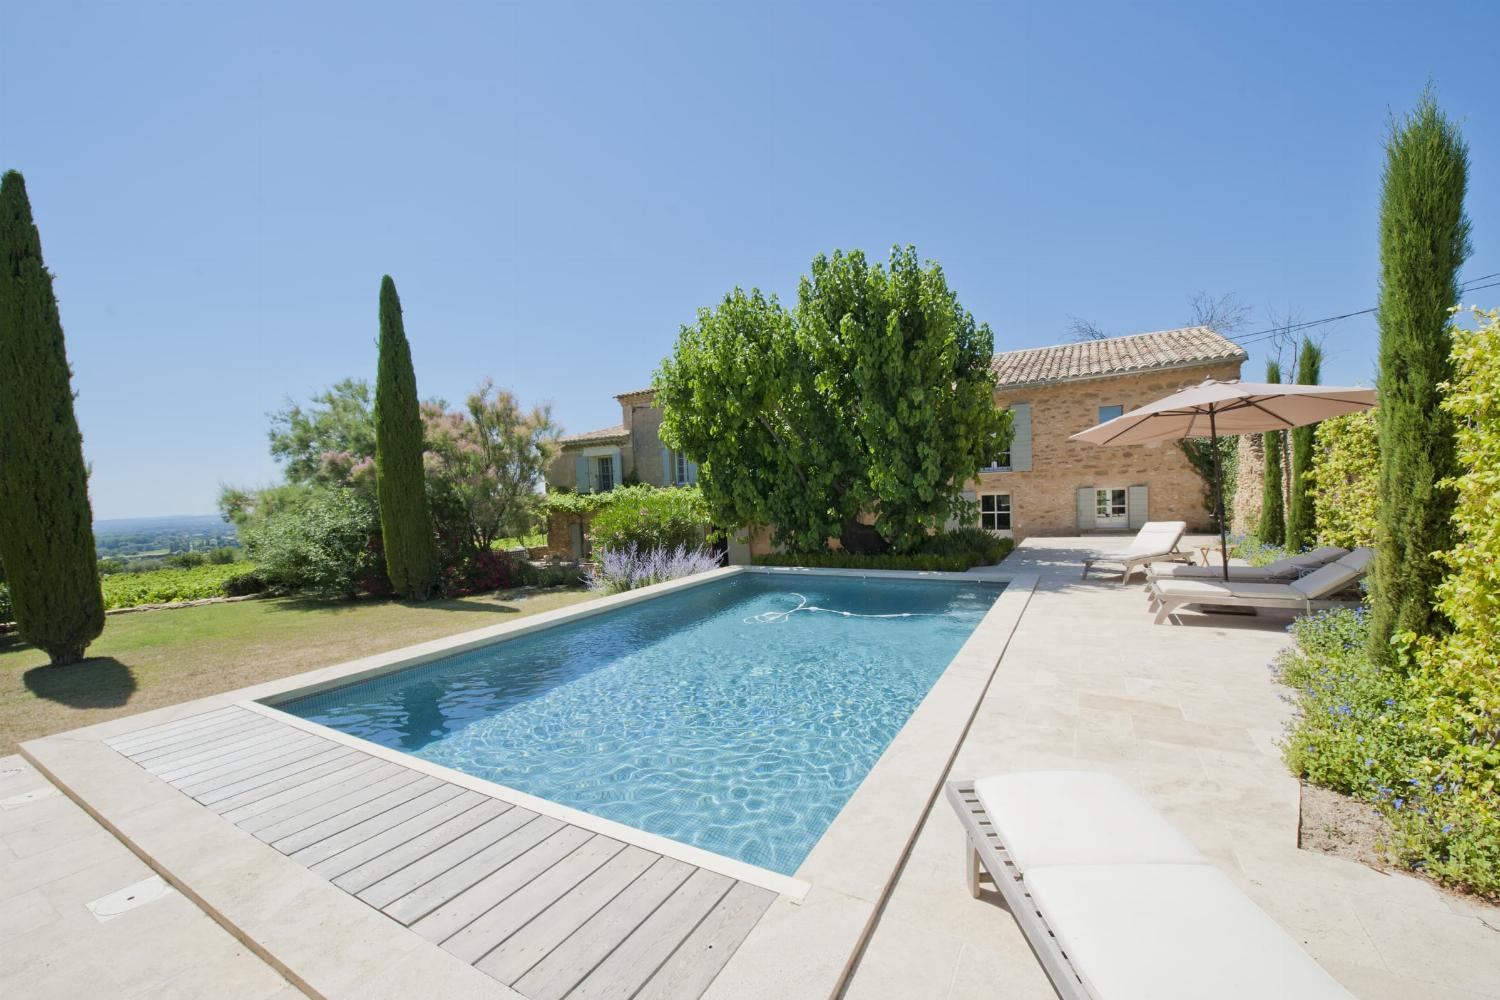 lMaison de vacances en Provence avec piscine privée chauffée